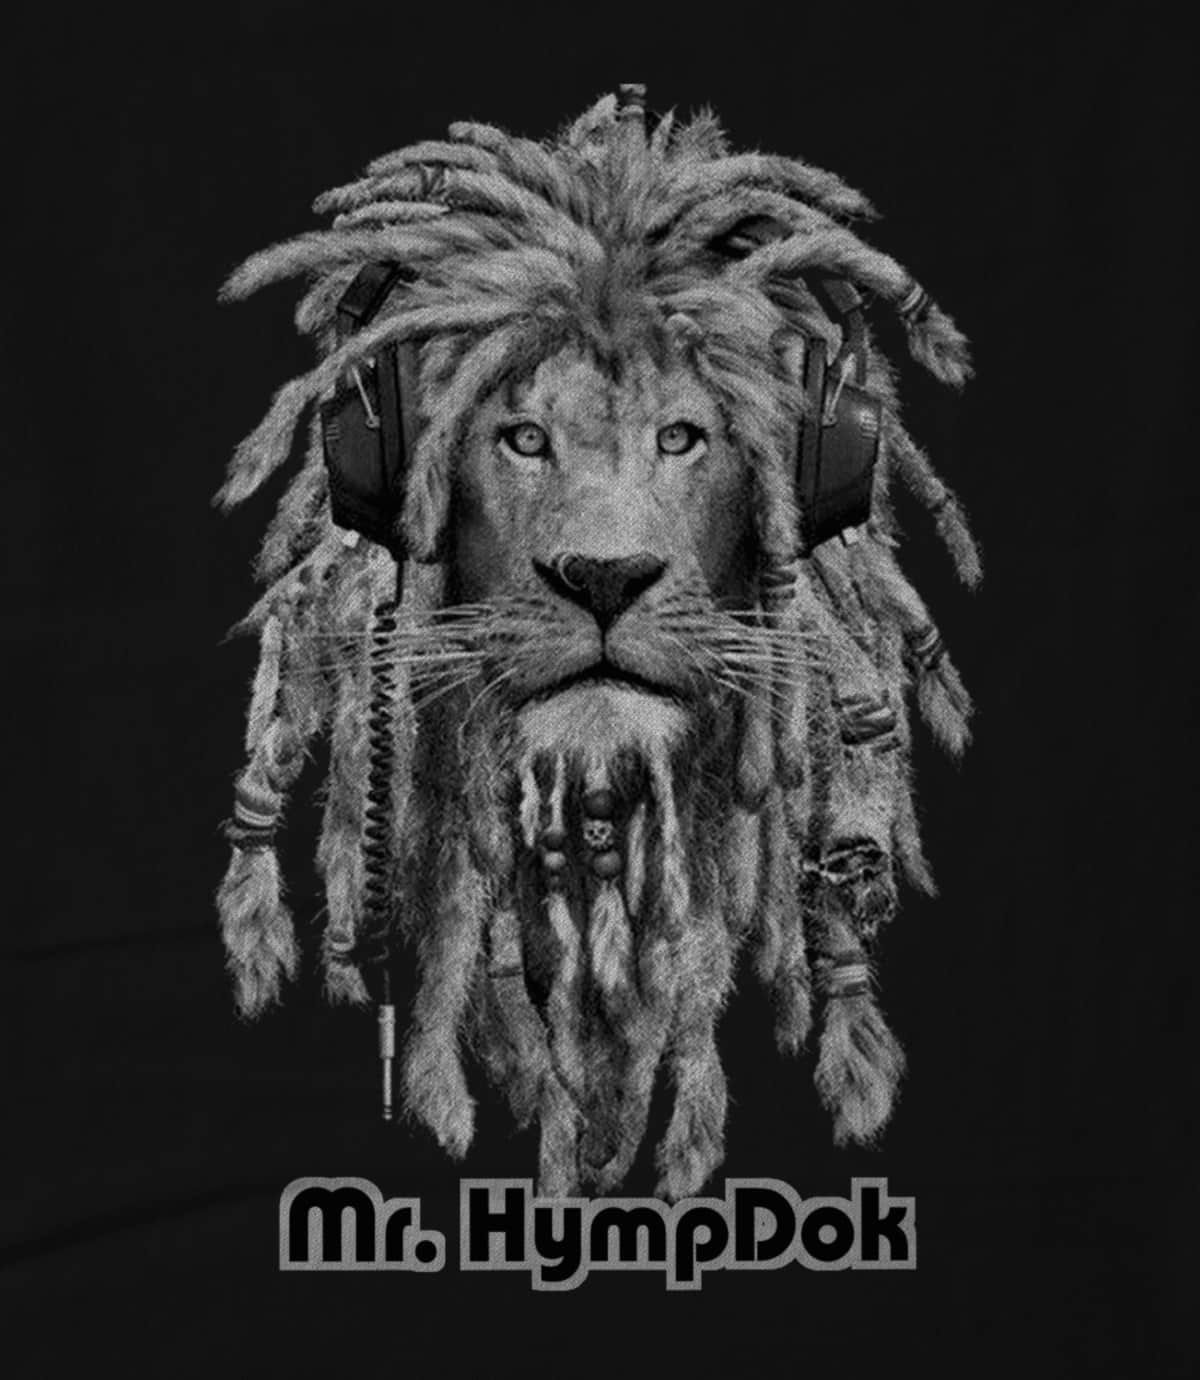 Mr. Hympdok